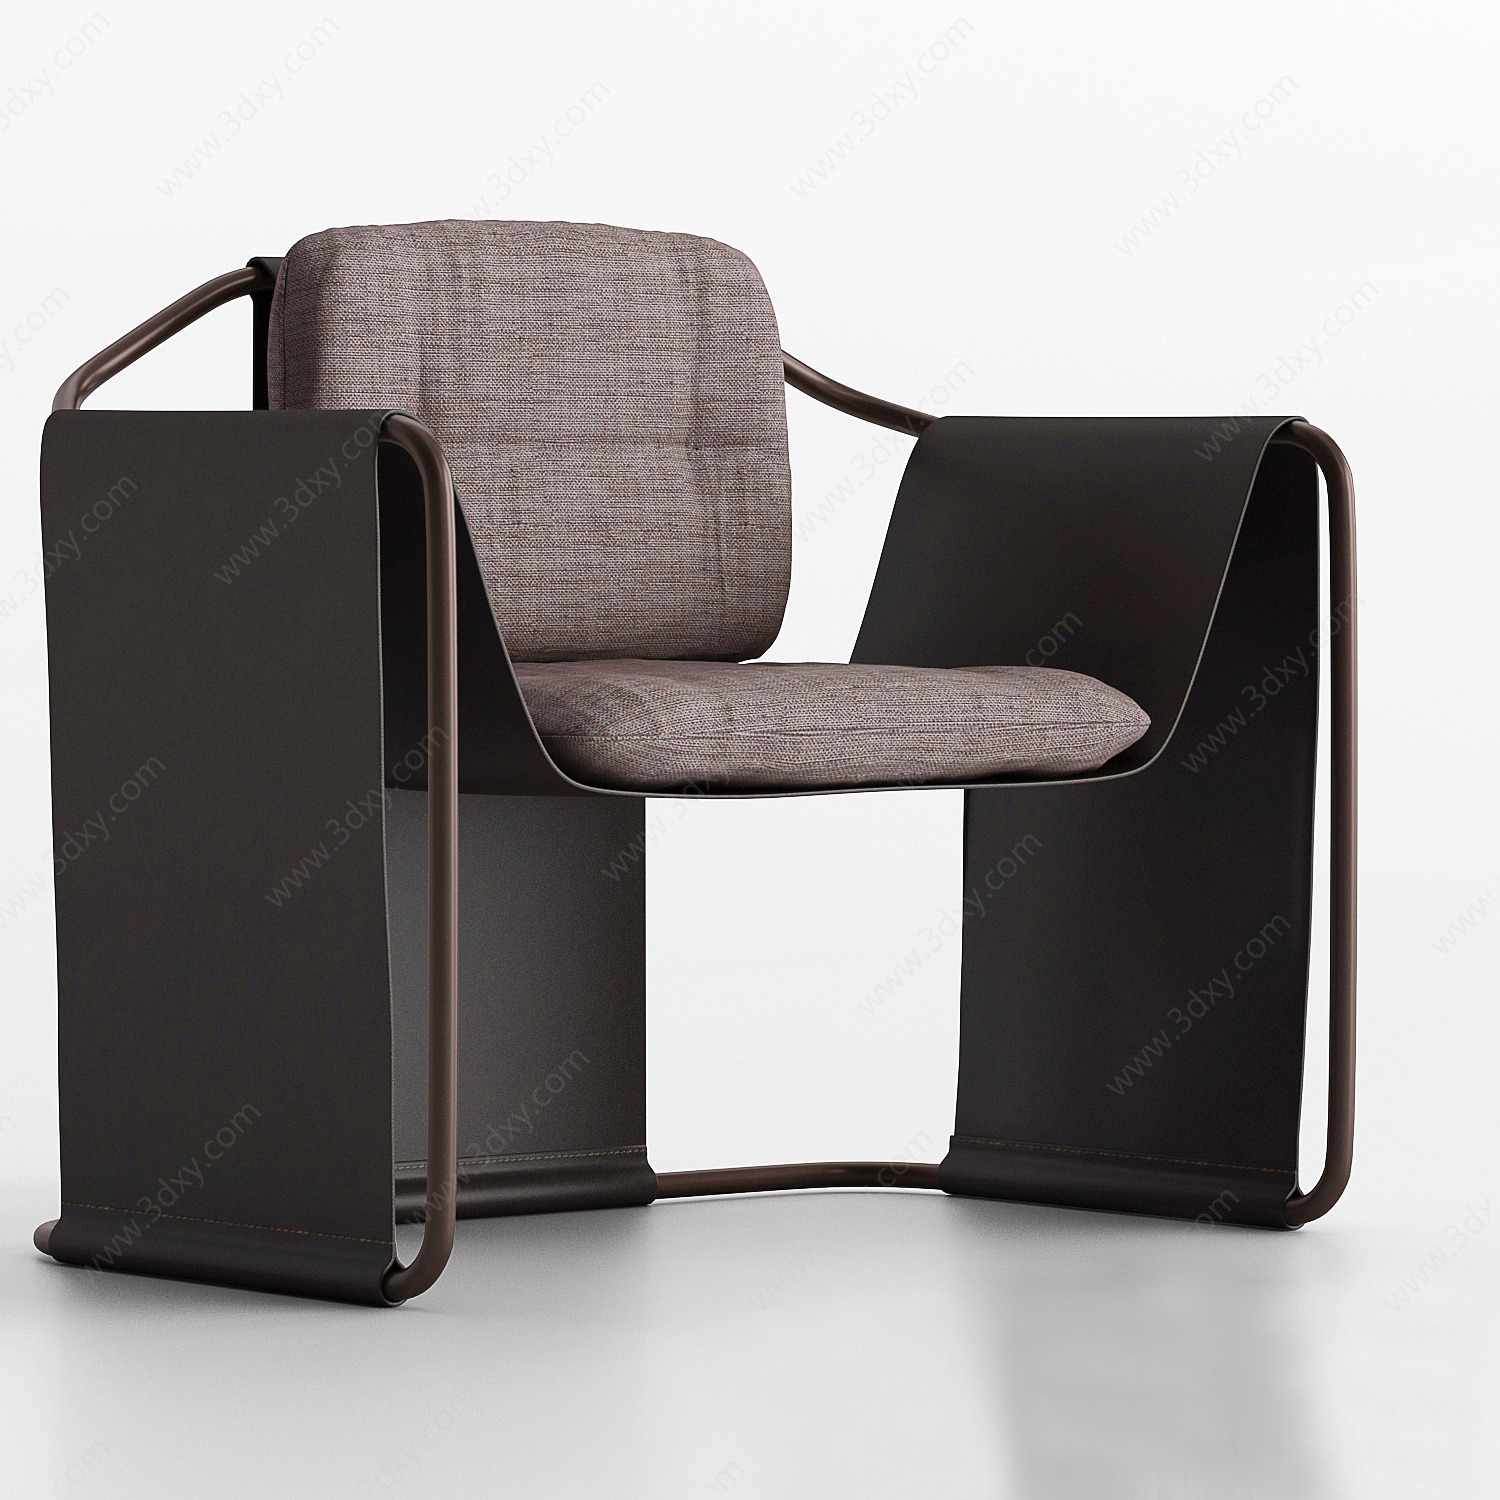 工业风沙发座椅3D模型